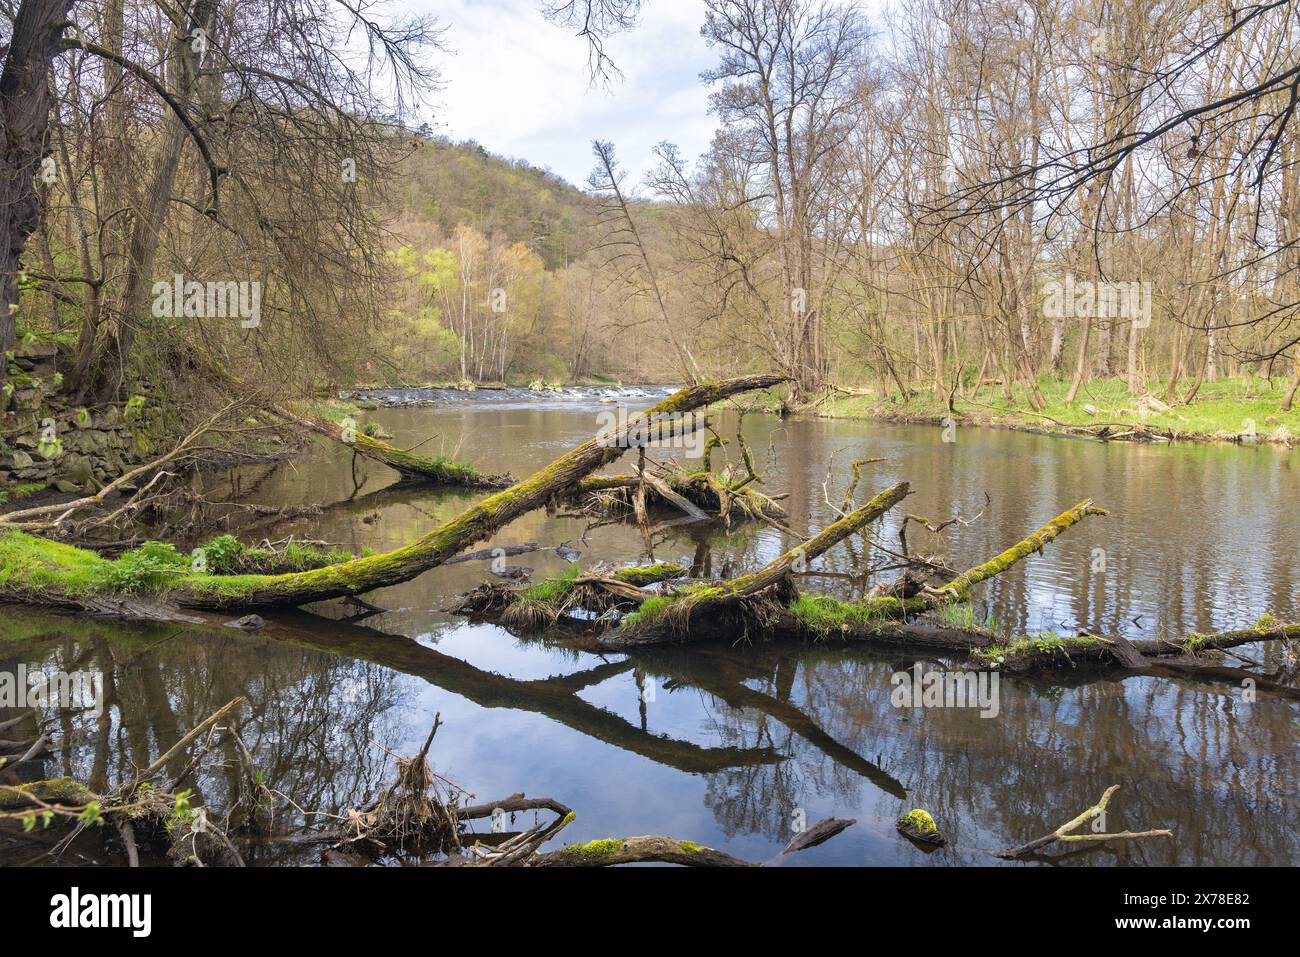 Fiume Dyje nel Parco Nazionale di Podyji vicino alla città di Znojmo nella regione della Moravia meridionale della Repubblica Ceca, Europa. Foto Stock